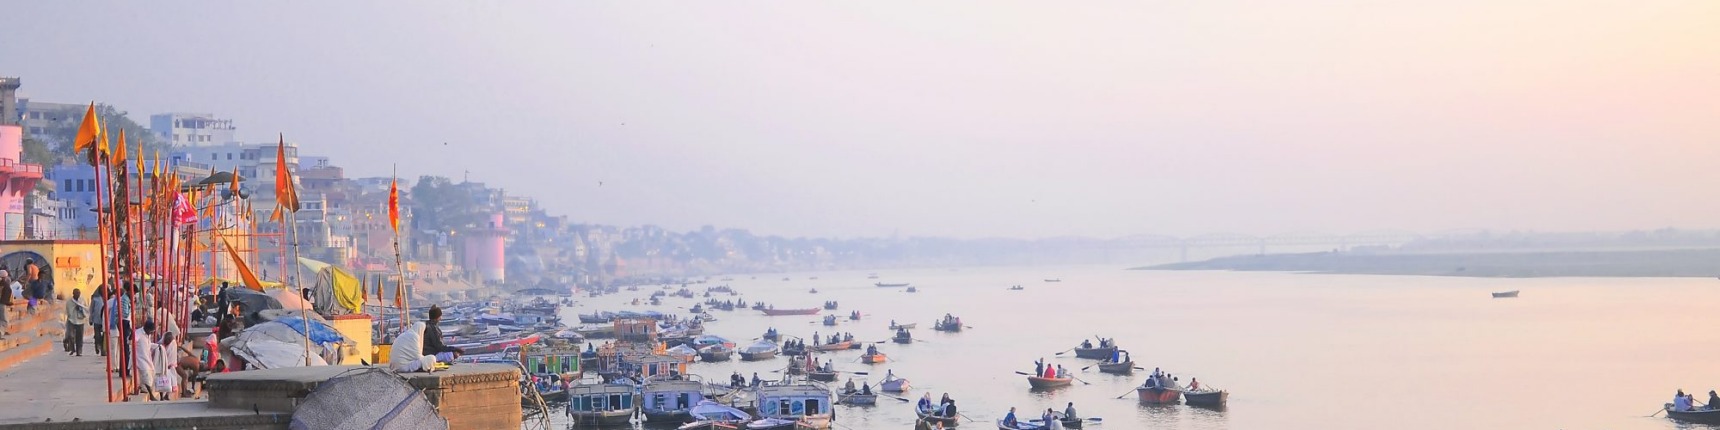 Varanasai, India